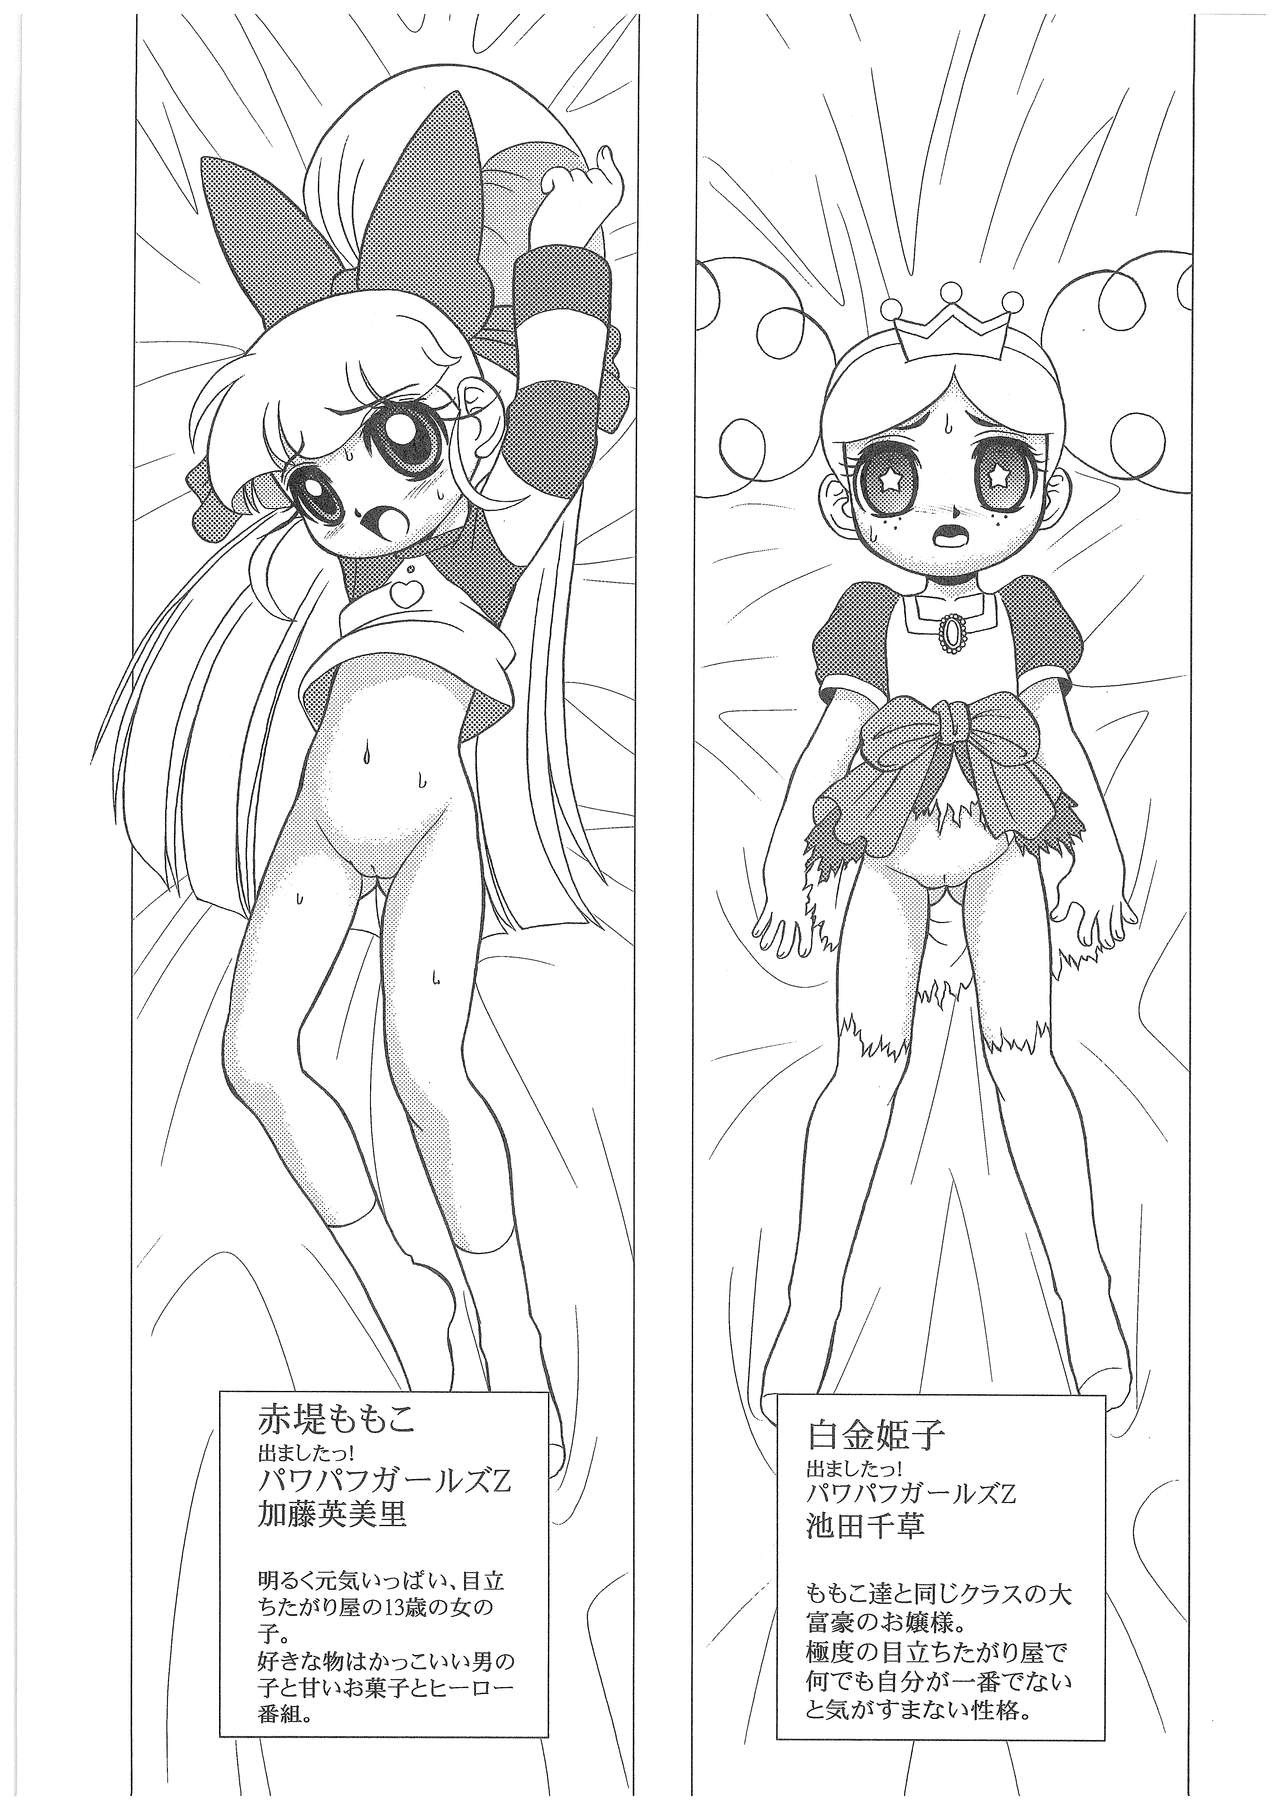 Power Puff Girls Z 001 hentai manga picture 3